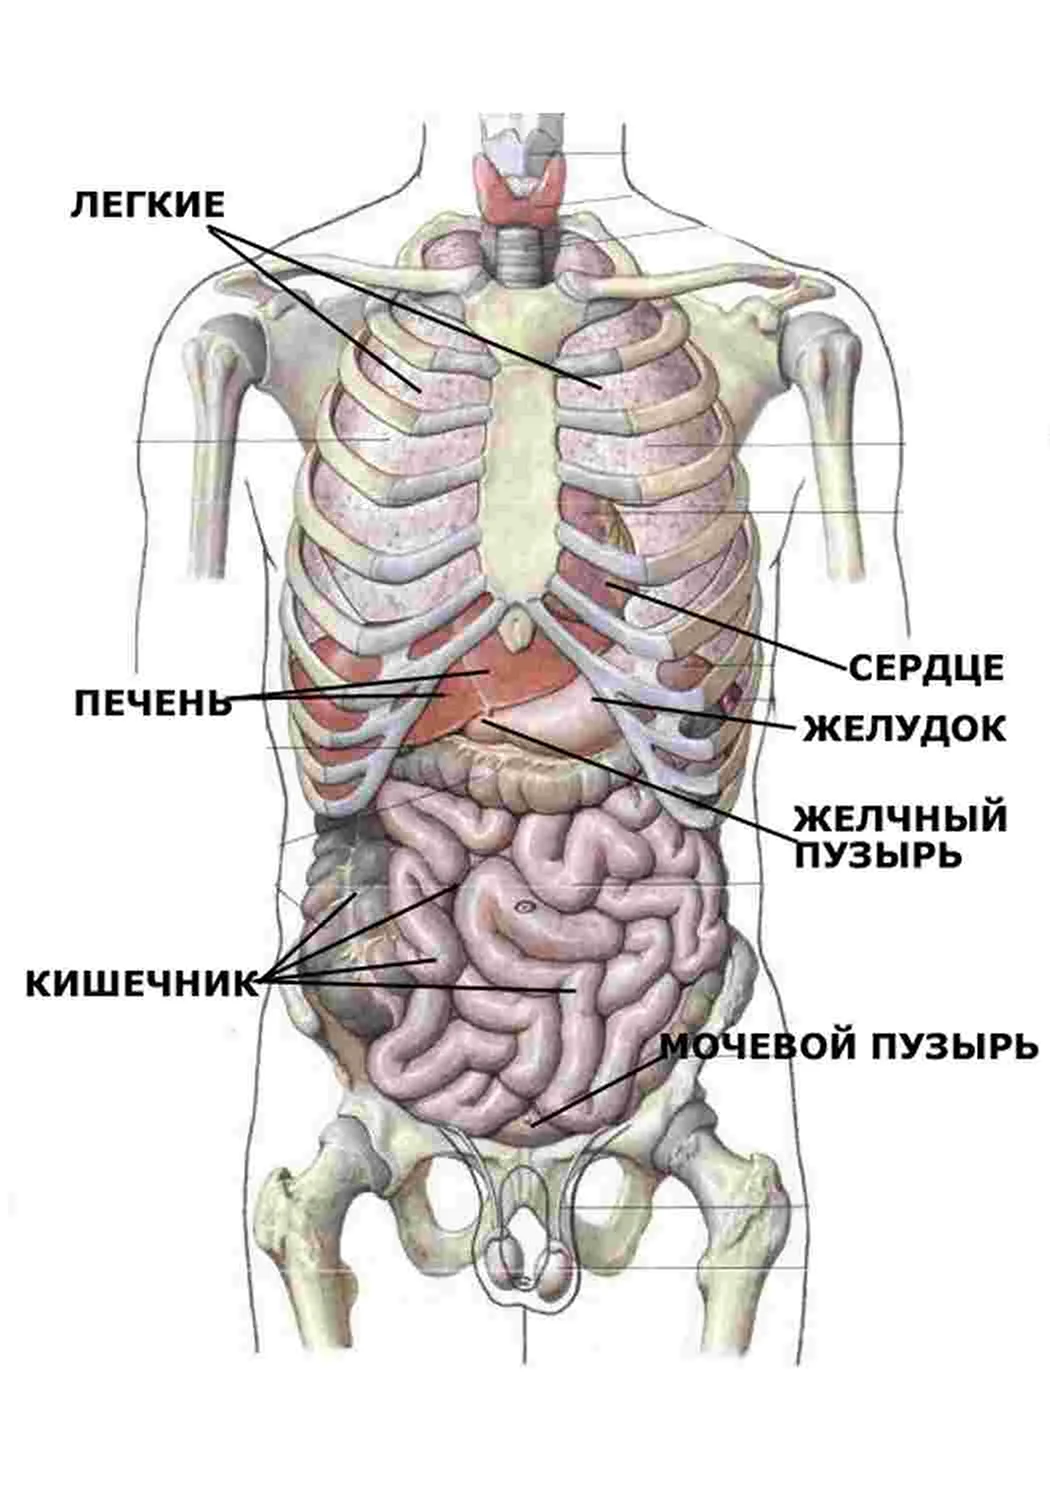 УЗИ внутренних органов (печени, желчного пузыря, поджелудочной железы, селезенки)